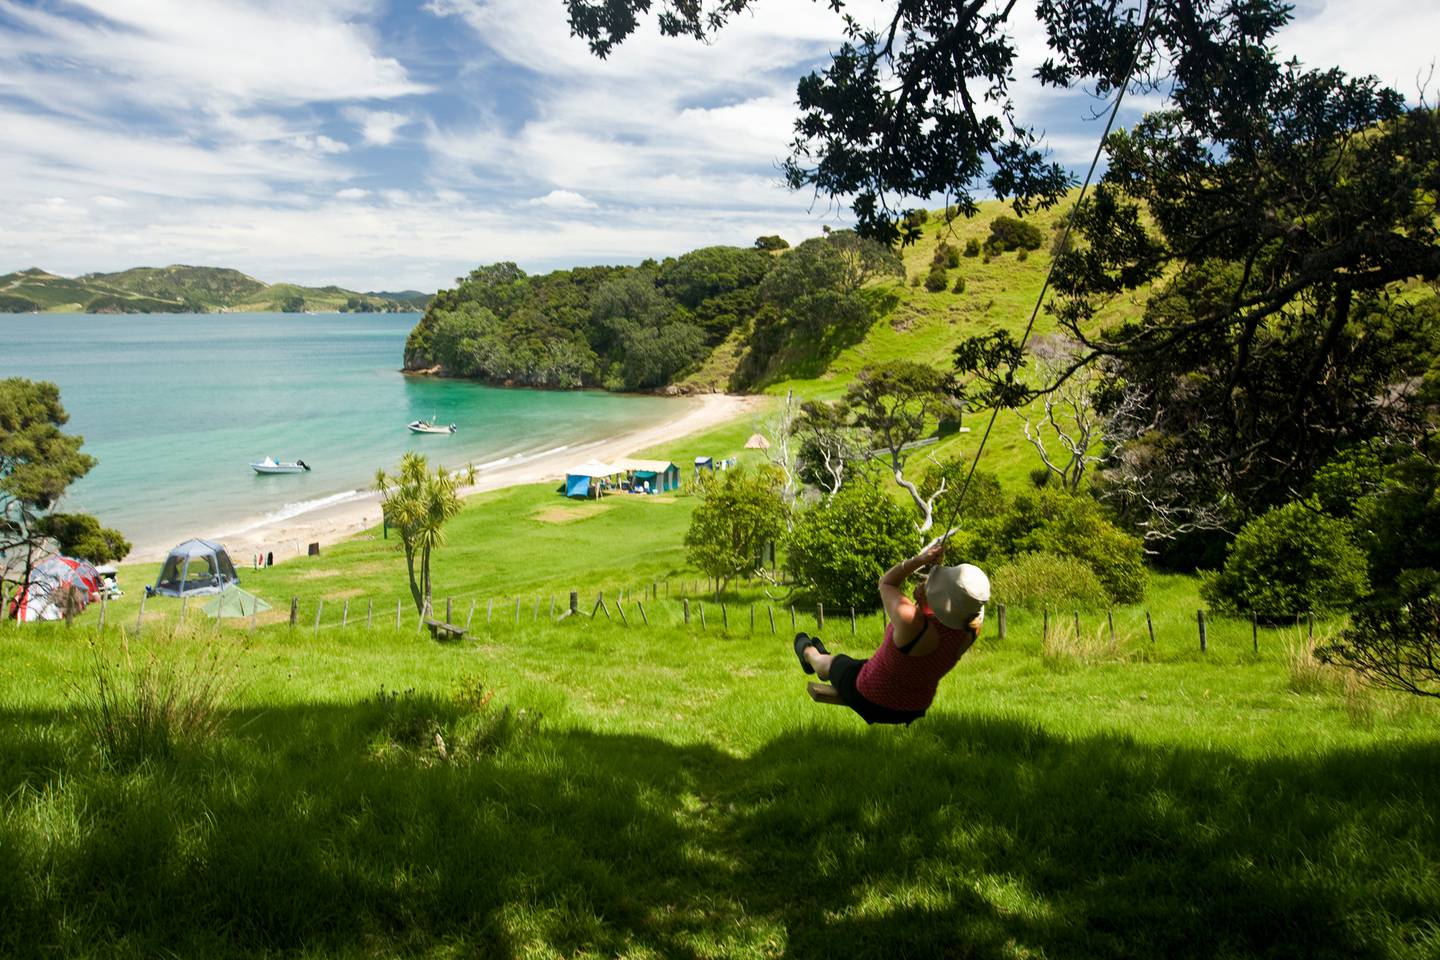 已敦促前往享受长周末和学校假期第二周的新西兰人制定计划，以防感染 Covid-19。 照片/盖蒂图片社